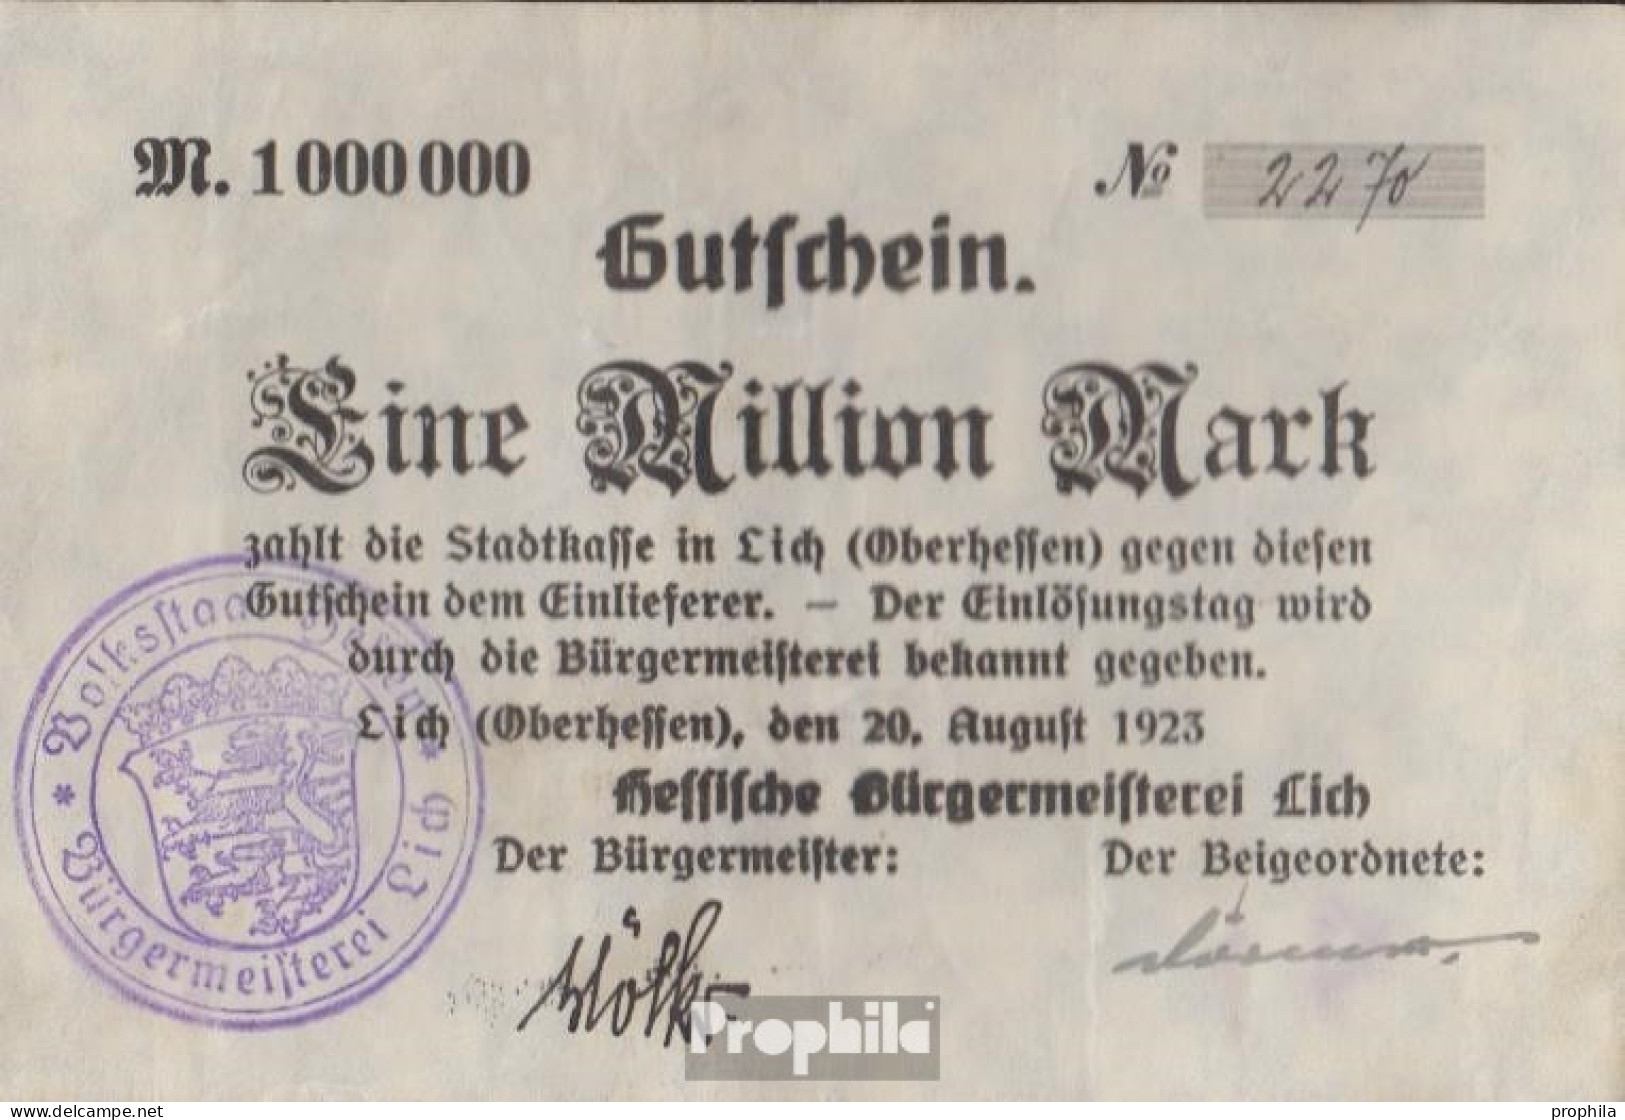 Lich Inflationsgeld Stadt Lich Gebraucht (III) 1923 1 Million Mark - 1 Miljoen Mark